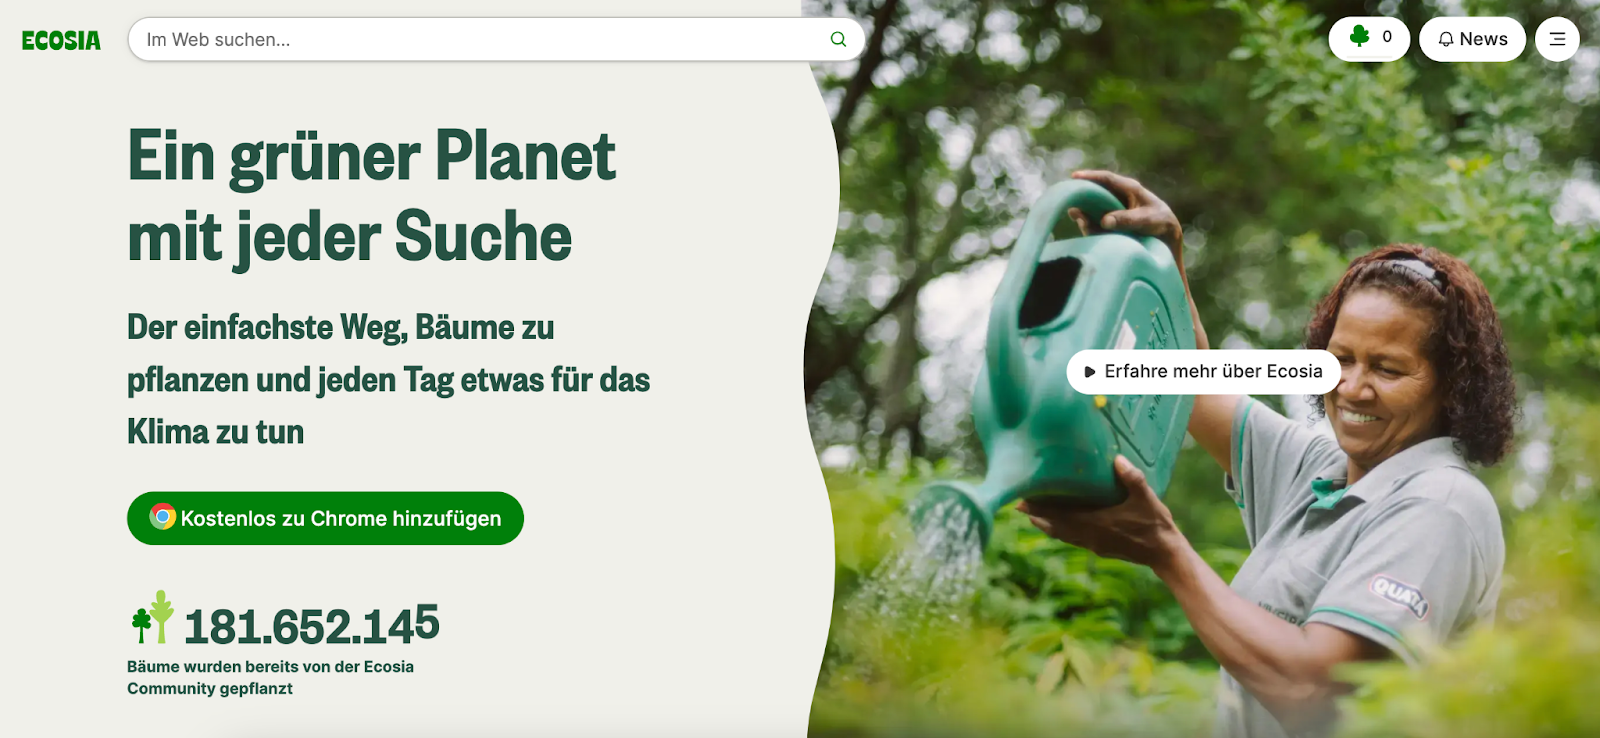 Ecosia Werbung